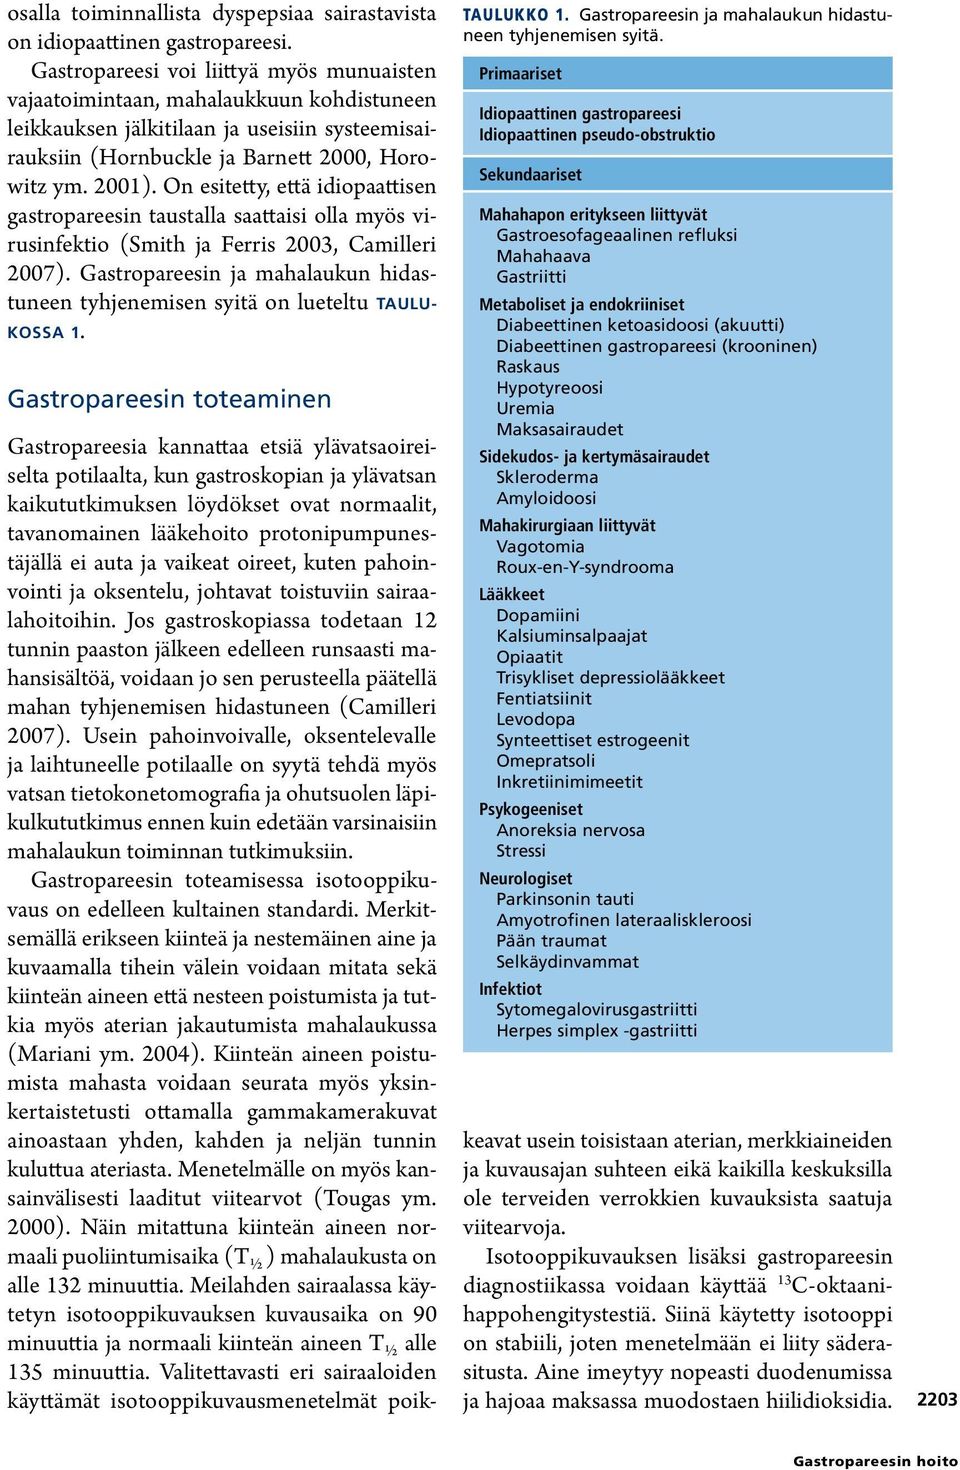 On esitetty, että idiopaattisen gastropareesin taustalla saattaisi olla myös virusinfektio (Smith ja Ferris 2003, Camilleri 2007).